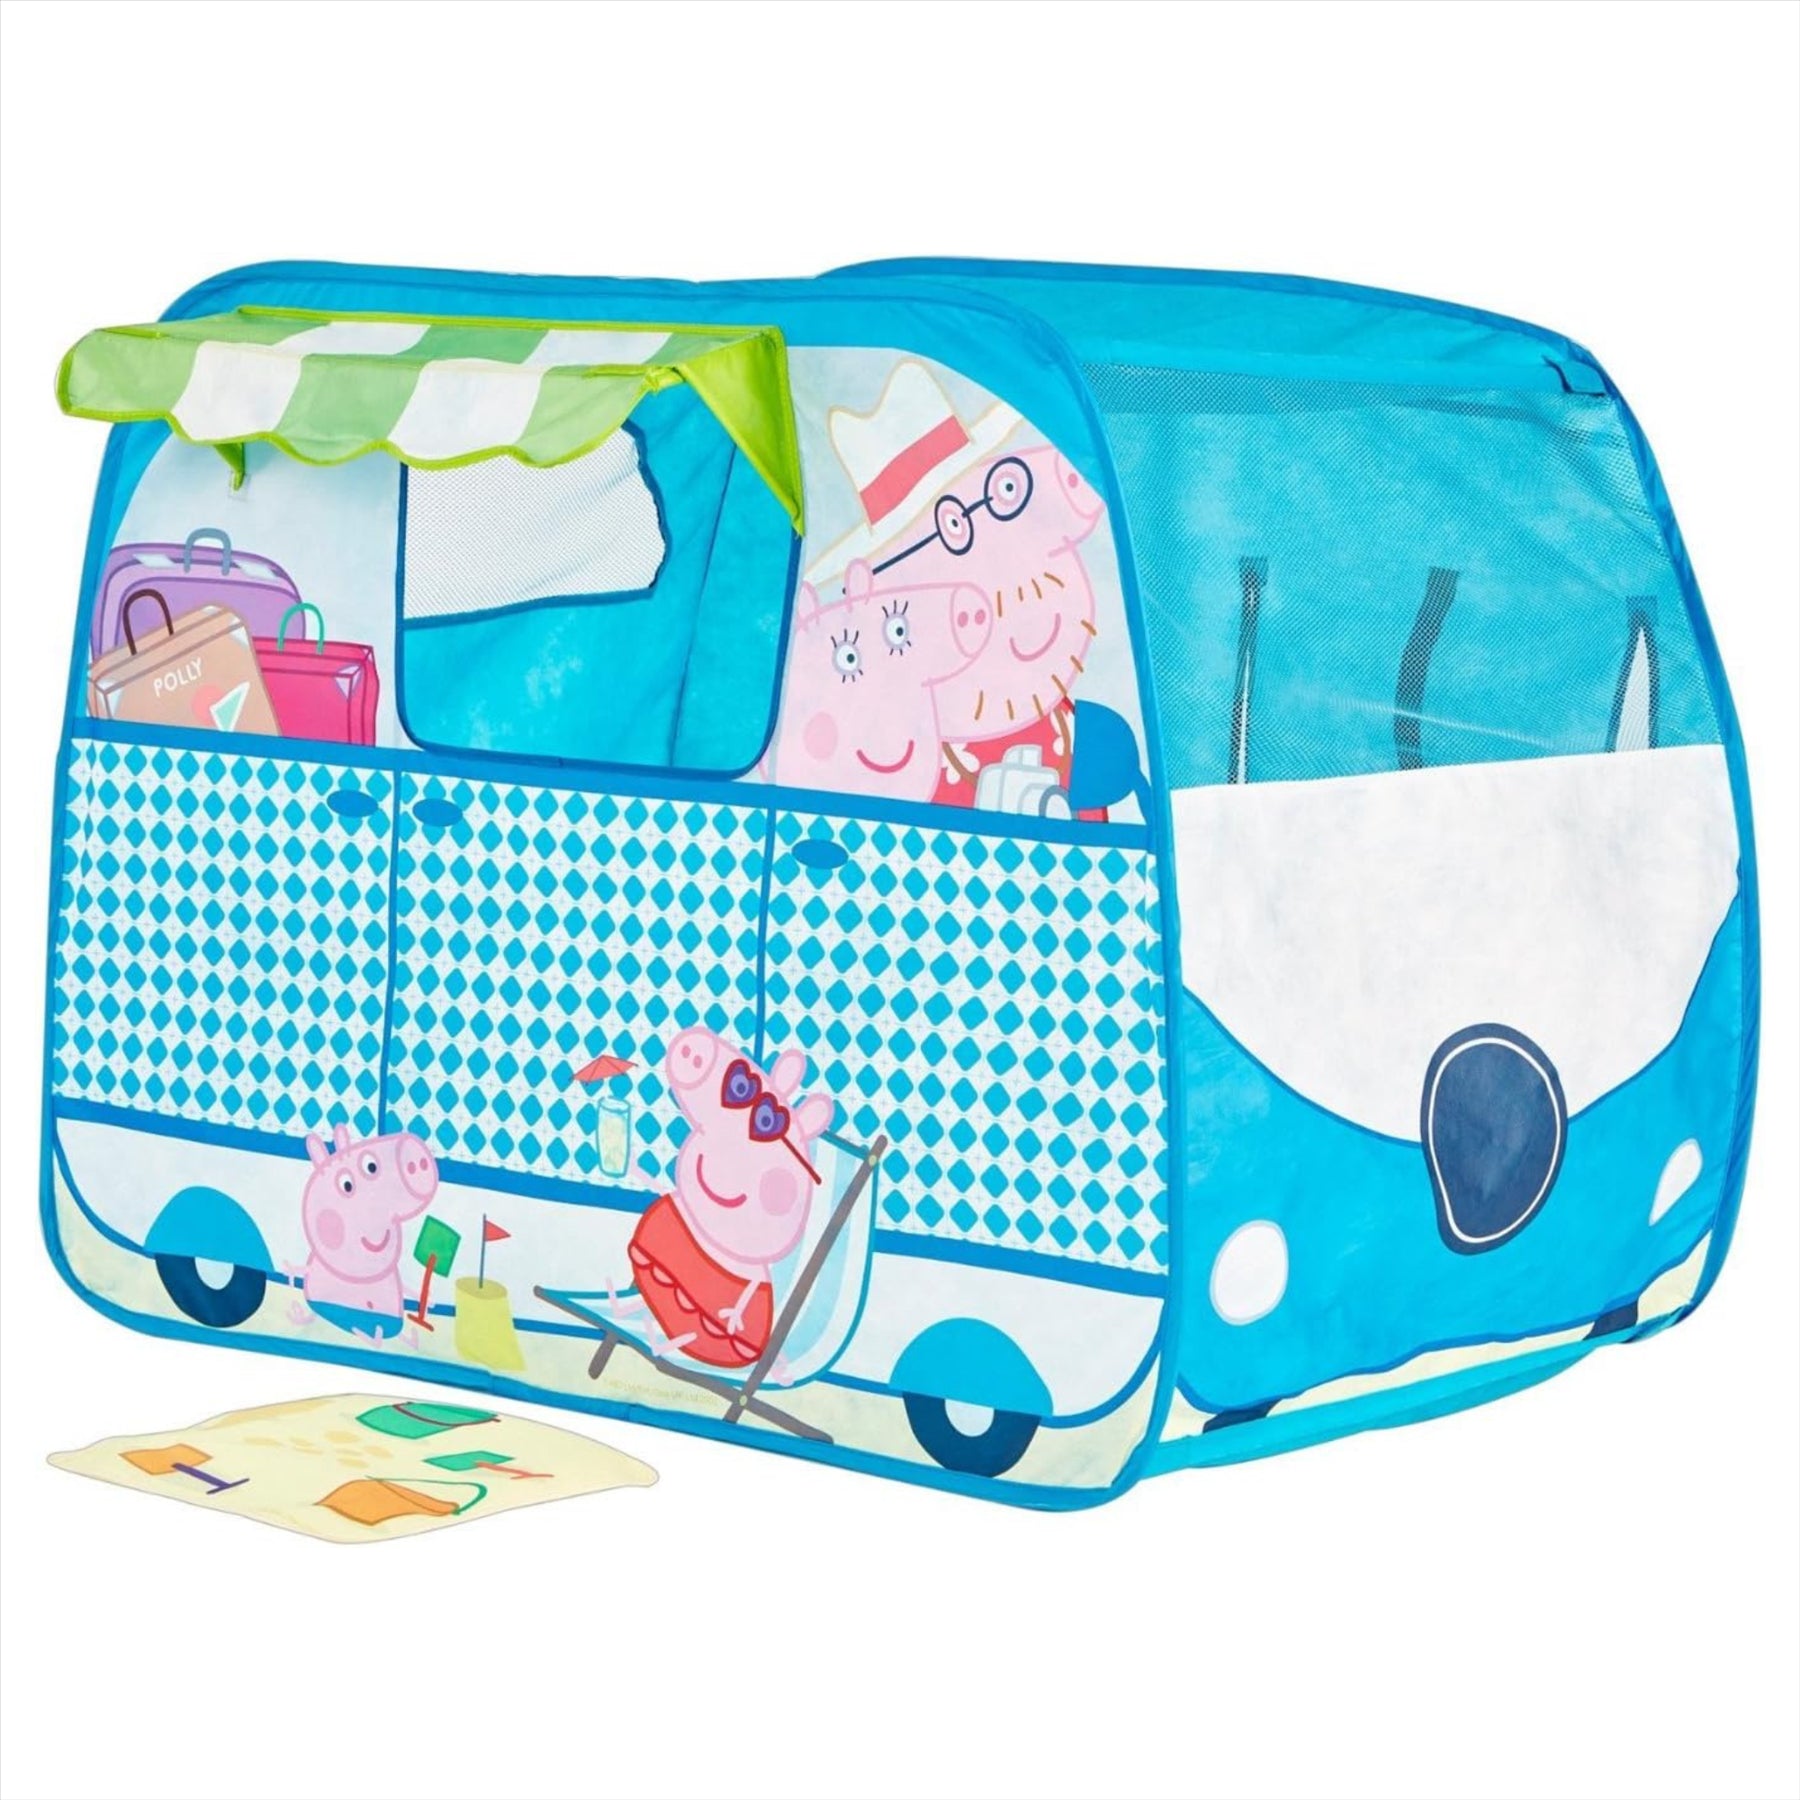 Peppa Pig Campervan Pop Up Play Tent Playhouse - Toptoys2u